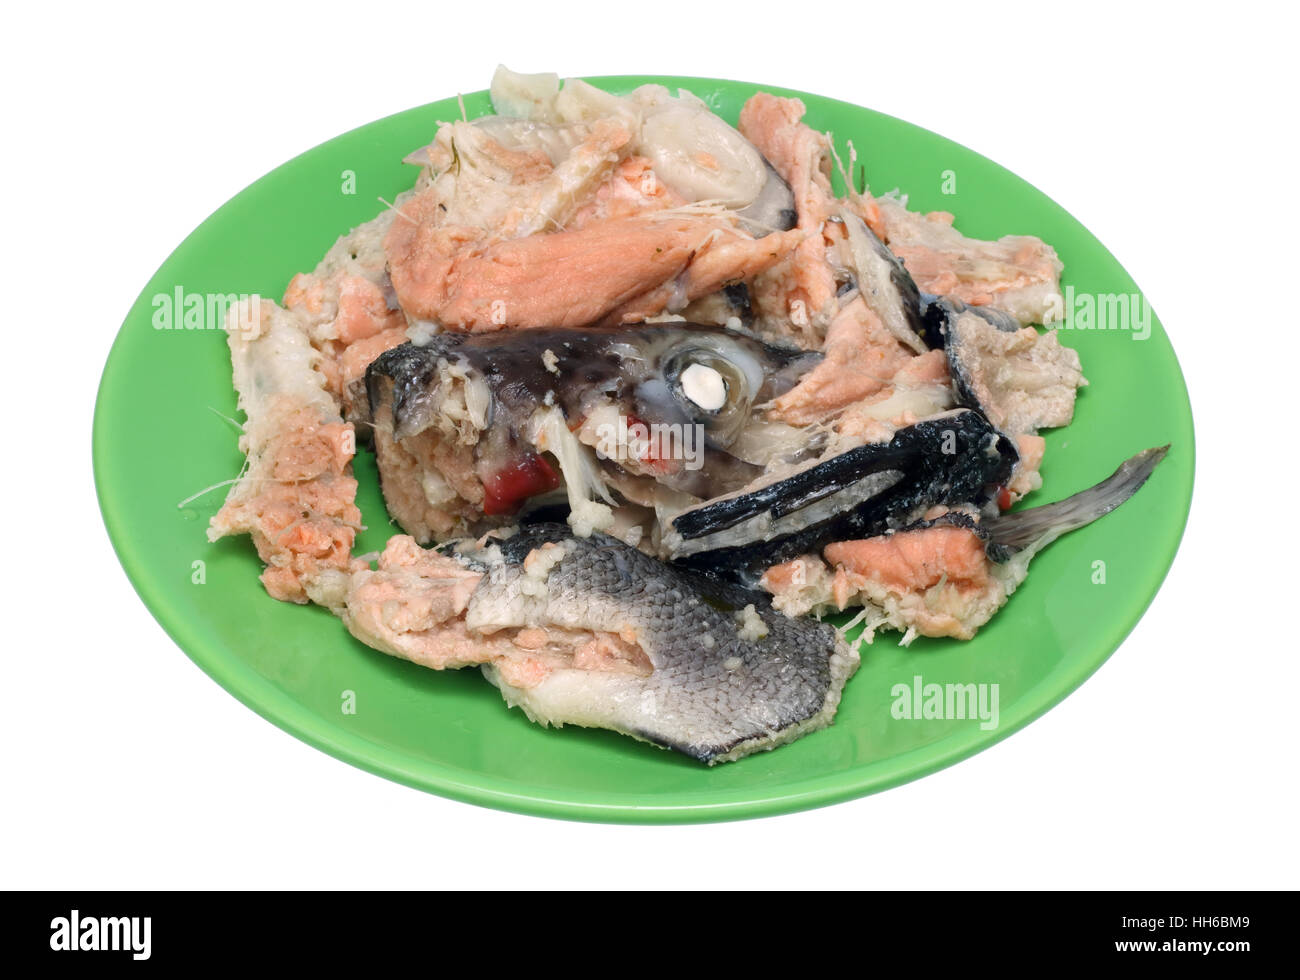 Le ossa, la testa e la pelle di un semplice salmone bollito giacciono su un verde piastra ceramica. Isolato su bianco closeup shot Foto Stock